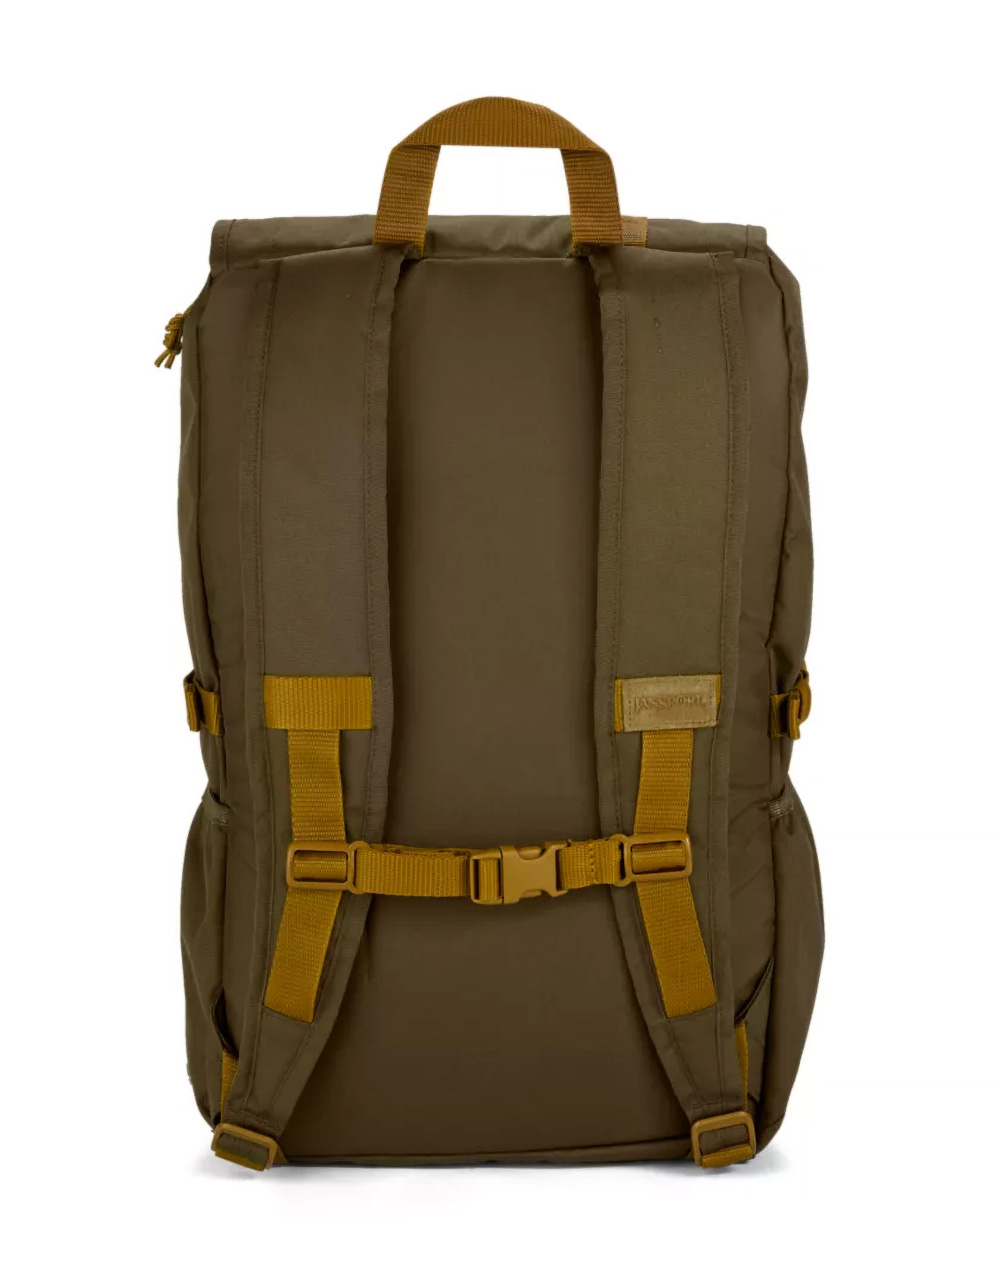 JANSPORT Hatchet Backpack - ARMY GREEN | Tillys